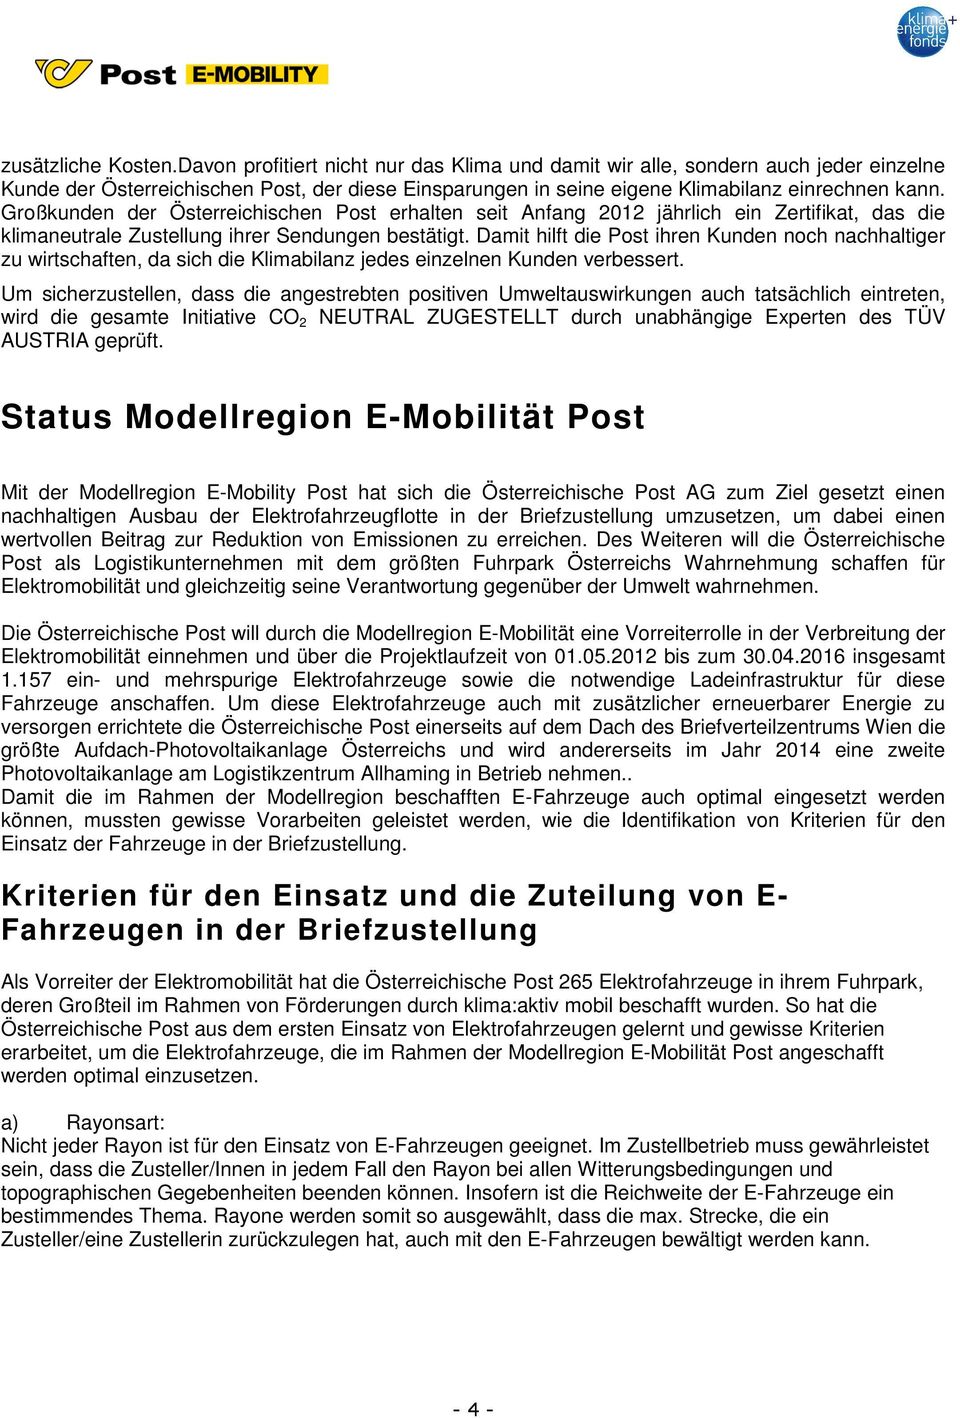 Großkunden der Österreichischen Post erhalten seit Anfang 2012 jährlich ein Zertifikat, das die klimaneutrale Zustellung ihrer Sendungen bestätigt.